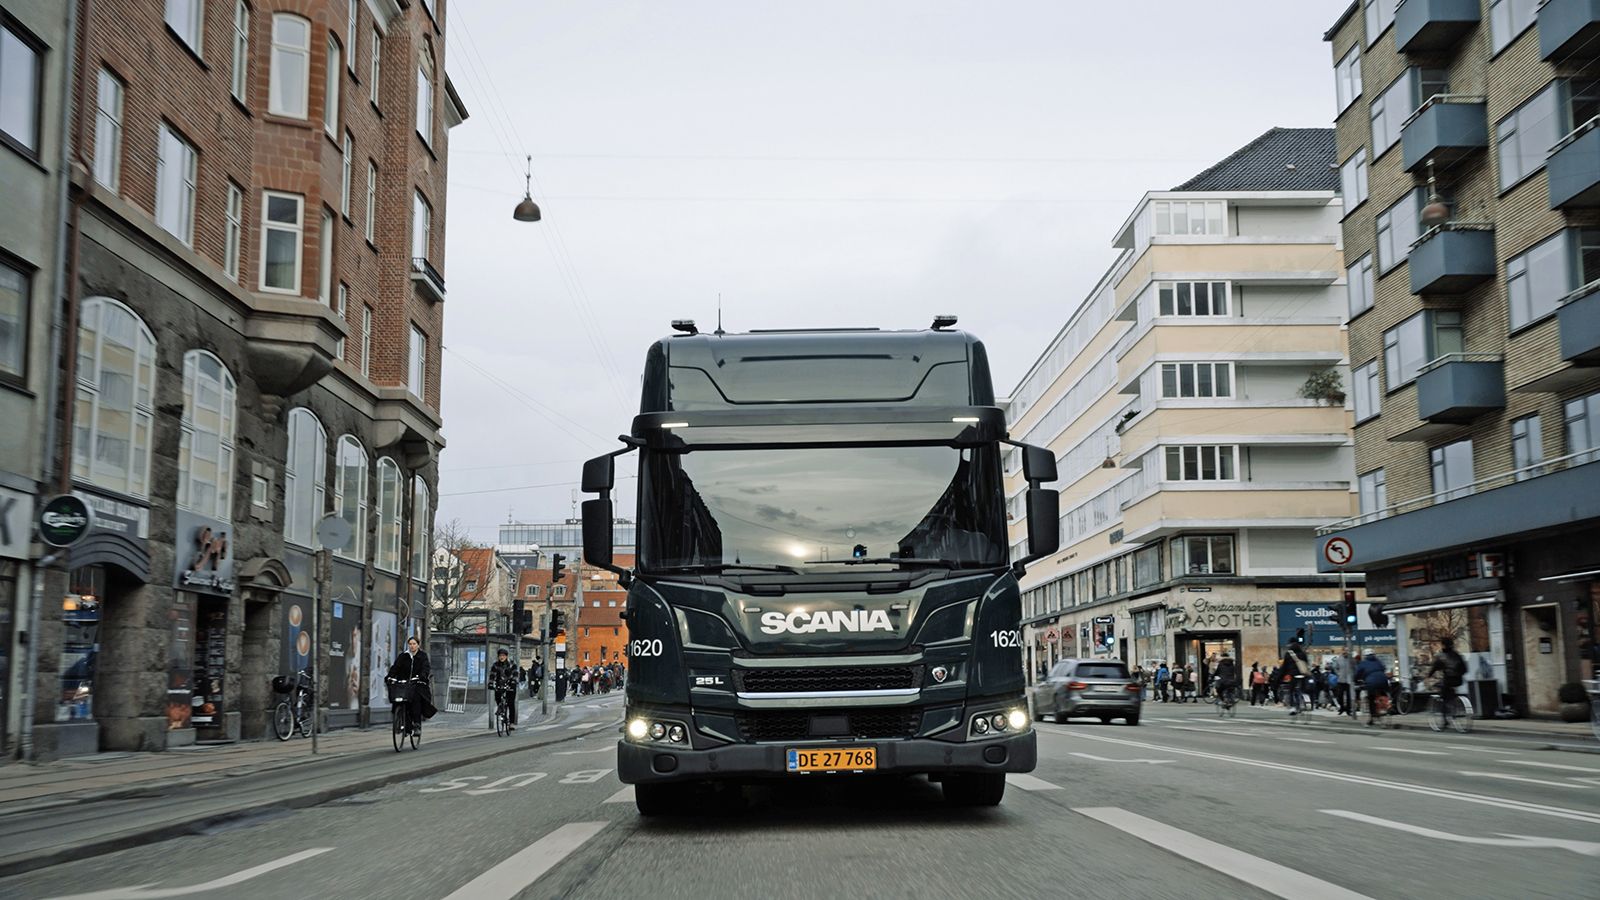 Πληθαίνουν συνεχώς οι παραγγελίες που λαμβάνει η Scania για τα πλήρως ηλεκτρικά φορτηγά της.